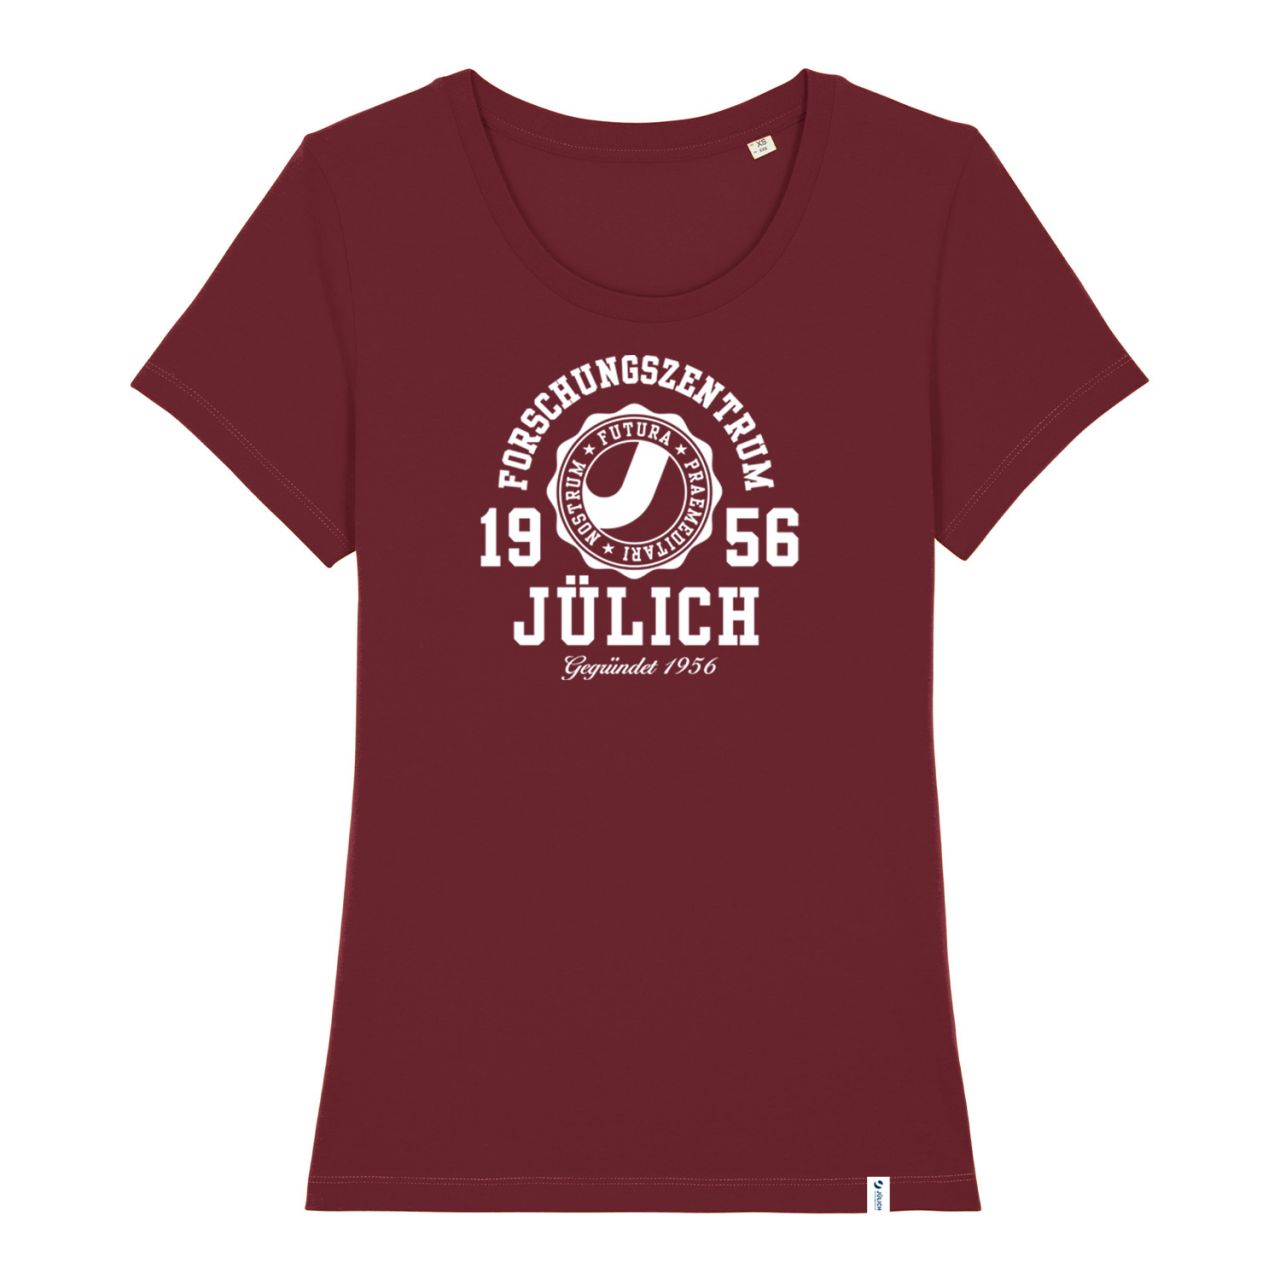 Women's Organic T-Shirt, burgundy, marshall